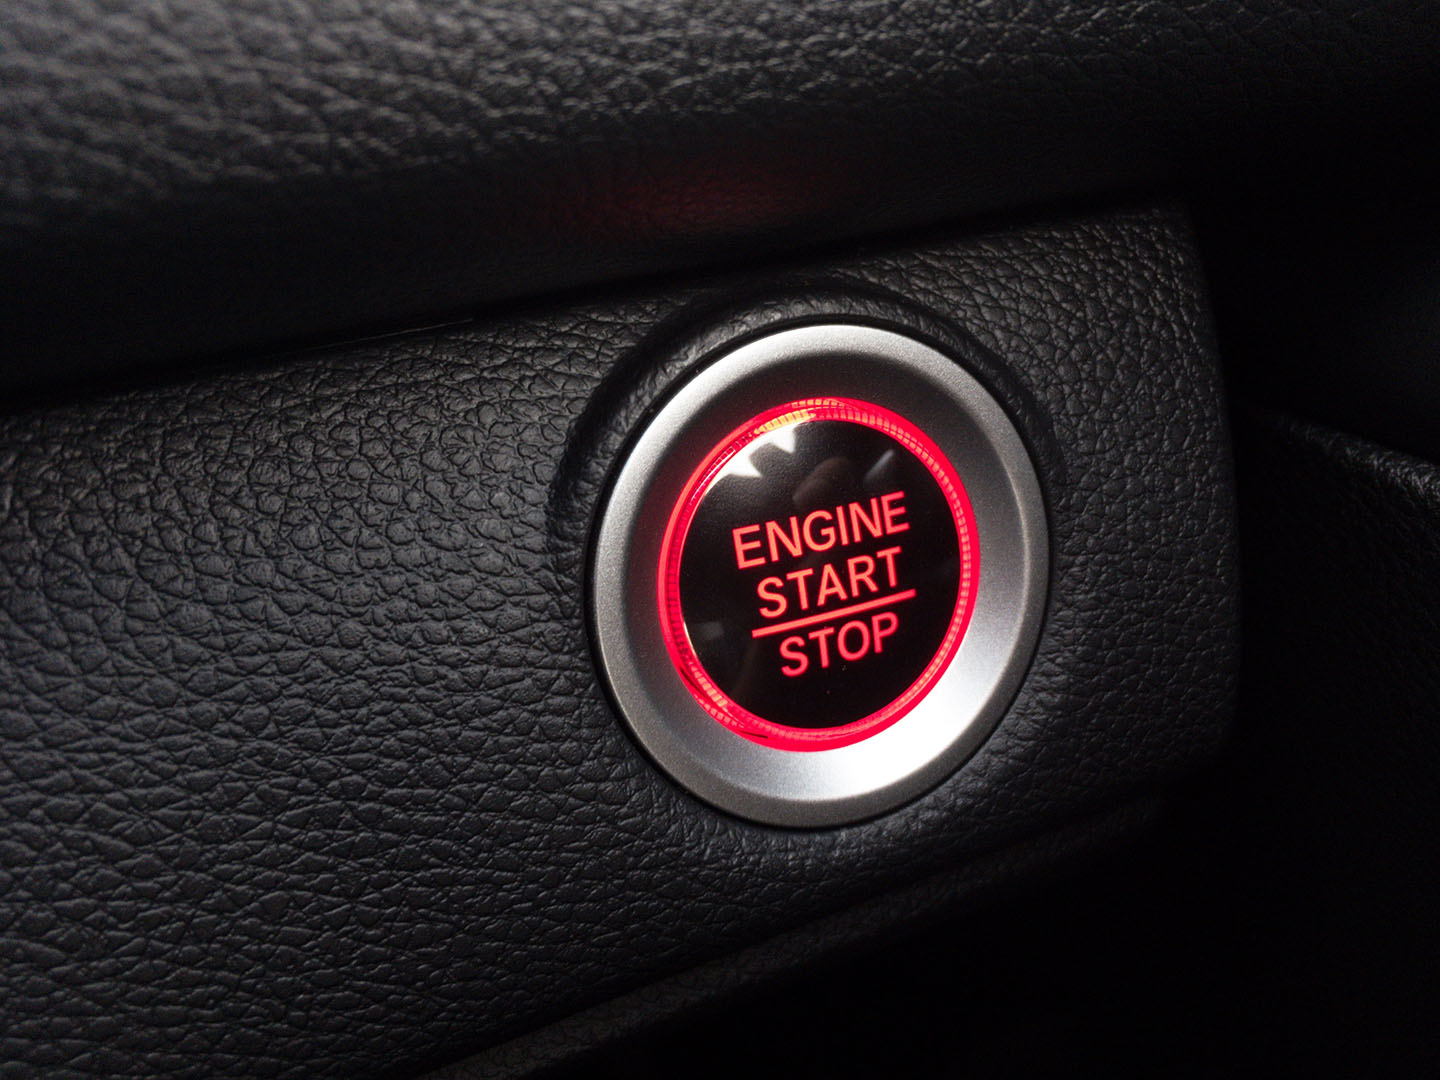 Engine start / stop button in luxury car